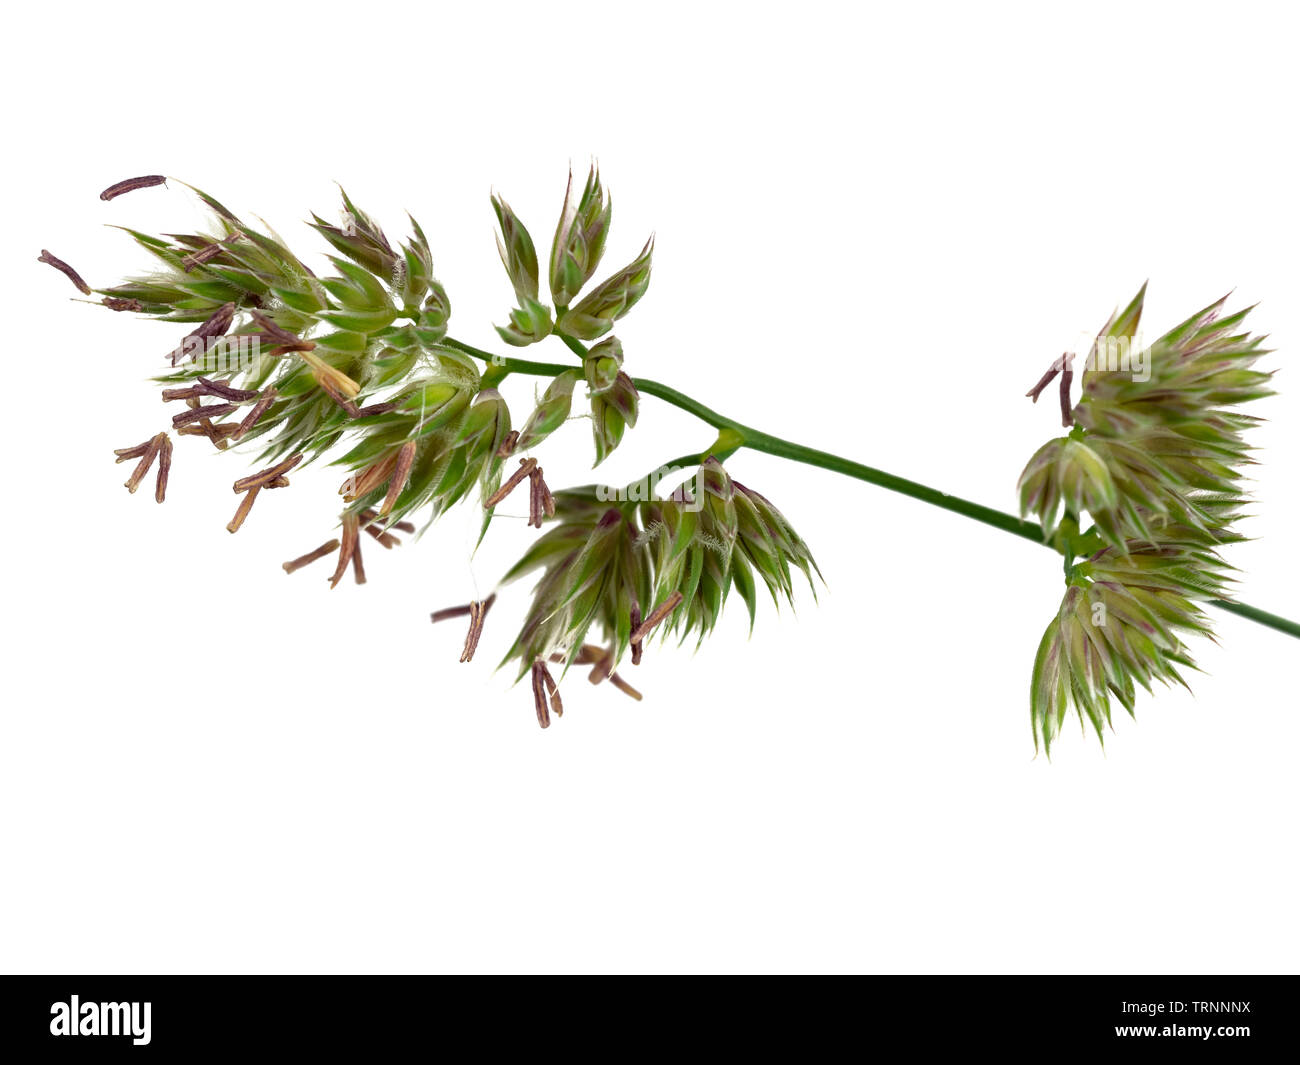 Nahaufnahme einer Blüte ährchen im Kopf der knaulgras Gras, Dactylis glomerata, auf weißem Hintergrund Stockfoto